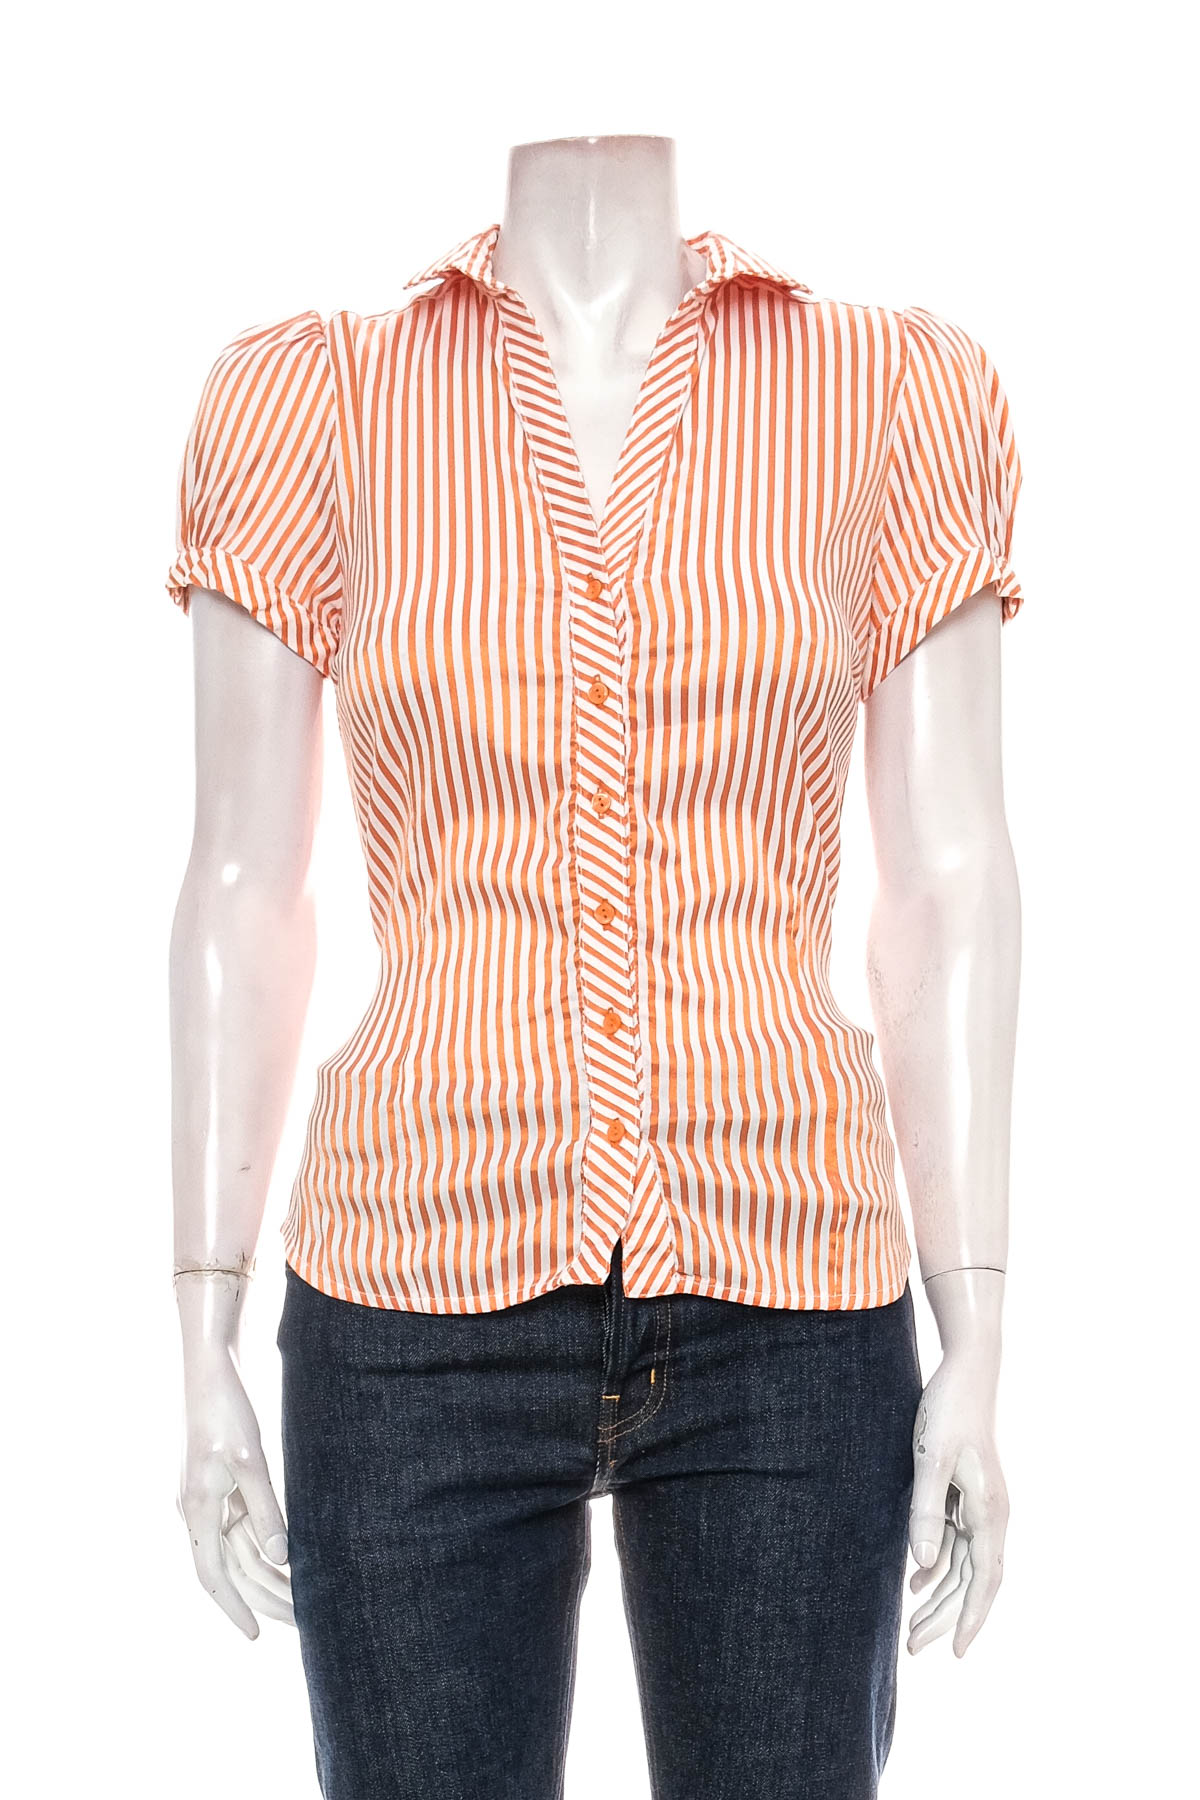 Γυναικείо πουκάμισο - ZARA Basic - 0